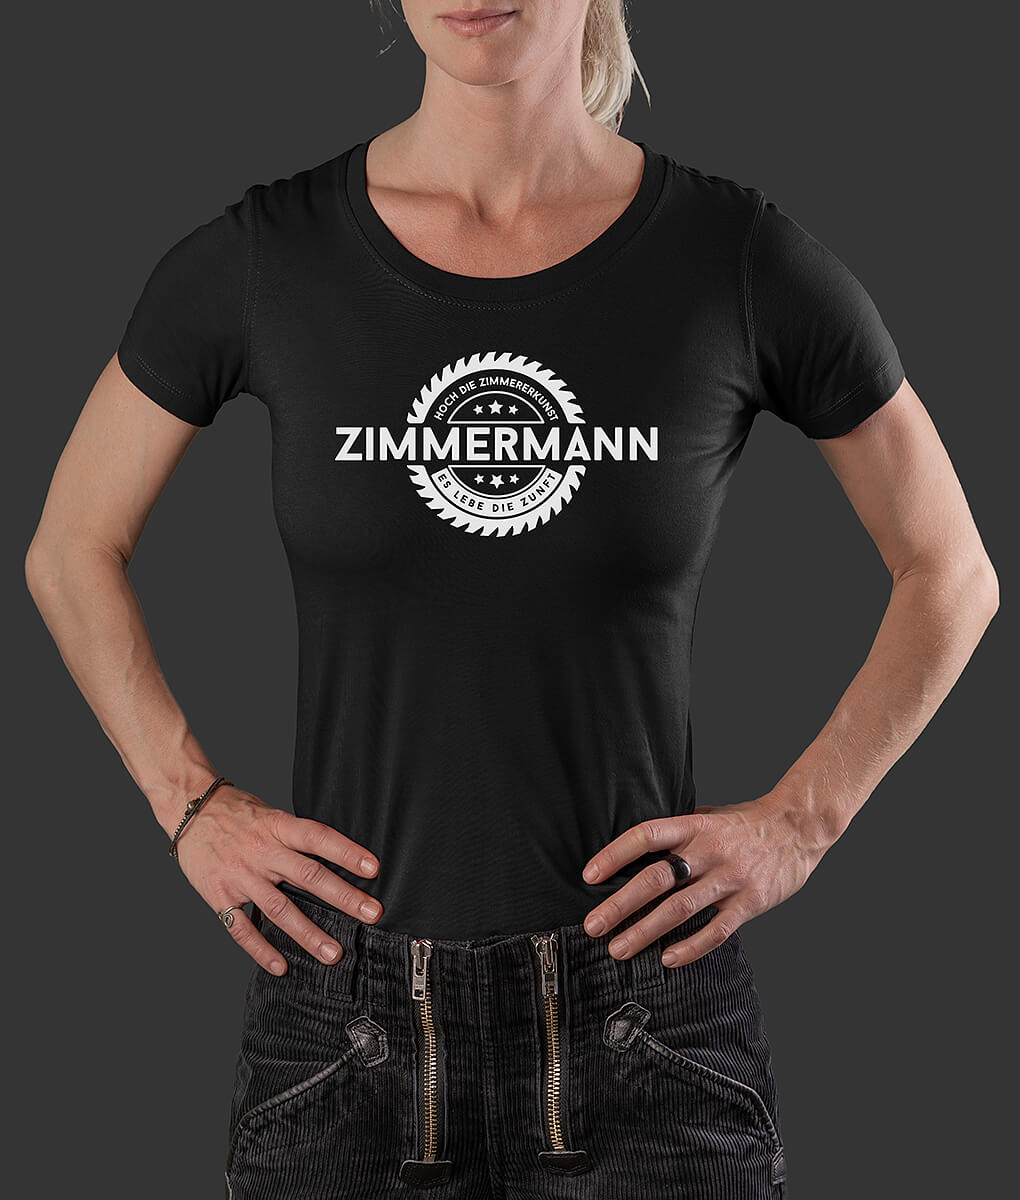 Damen T-Shirt Ida Säge Zimmermann Brust schwarz S